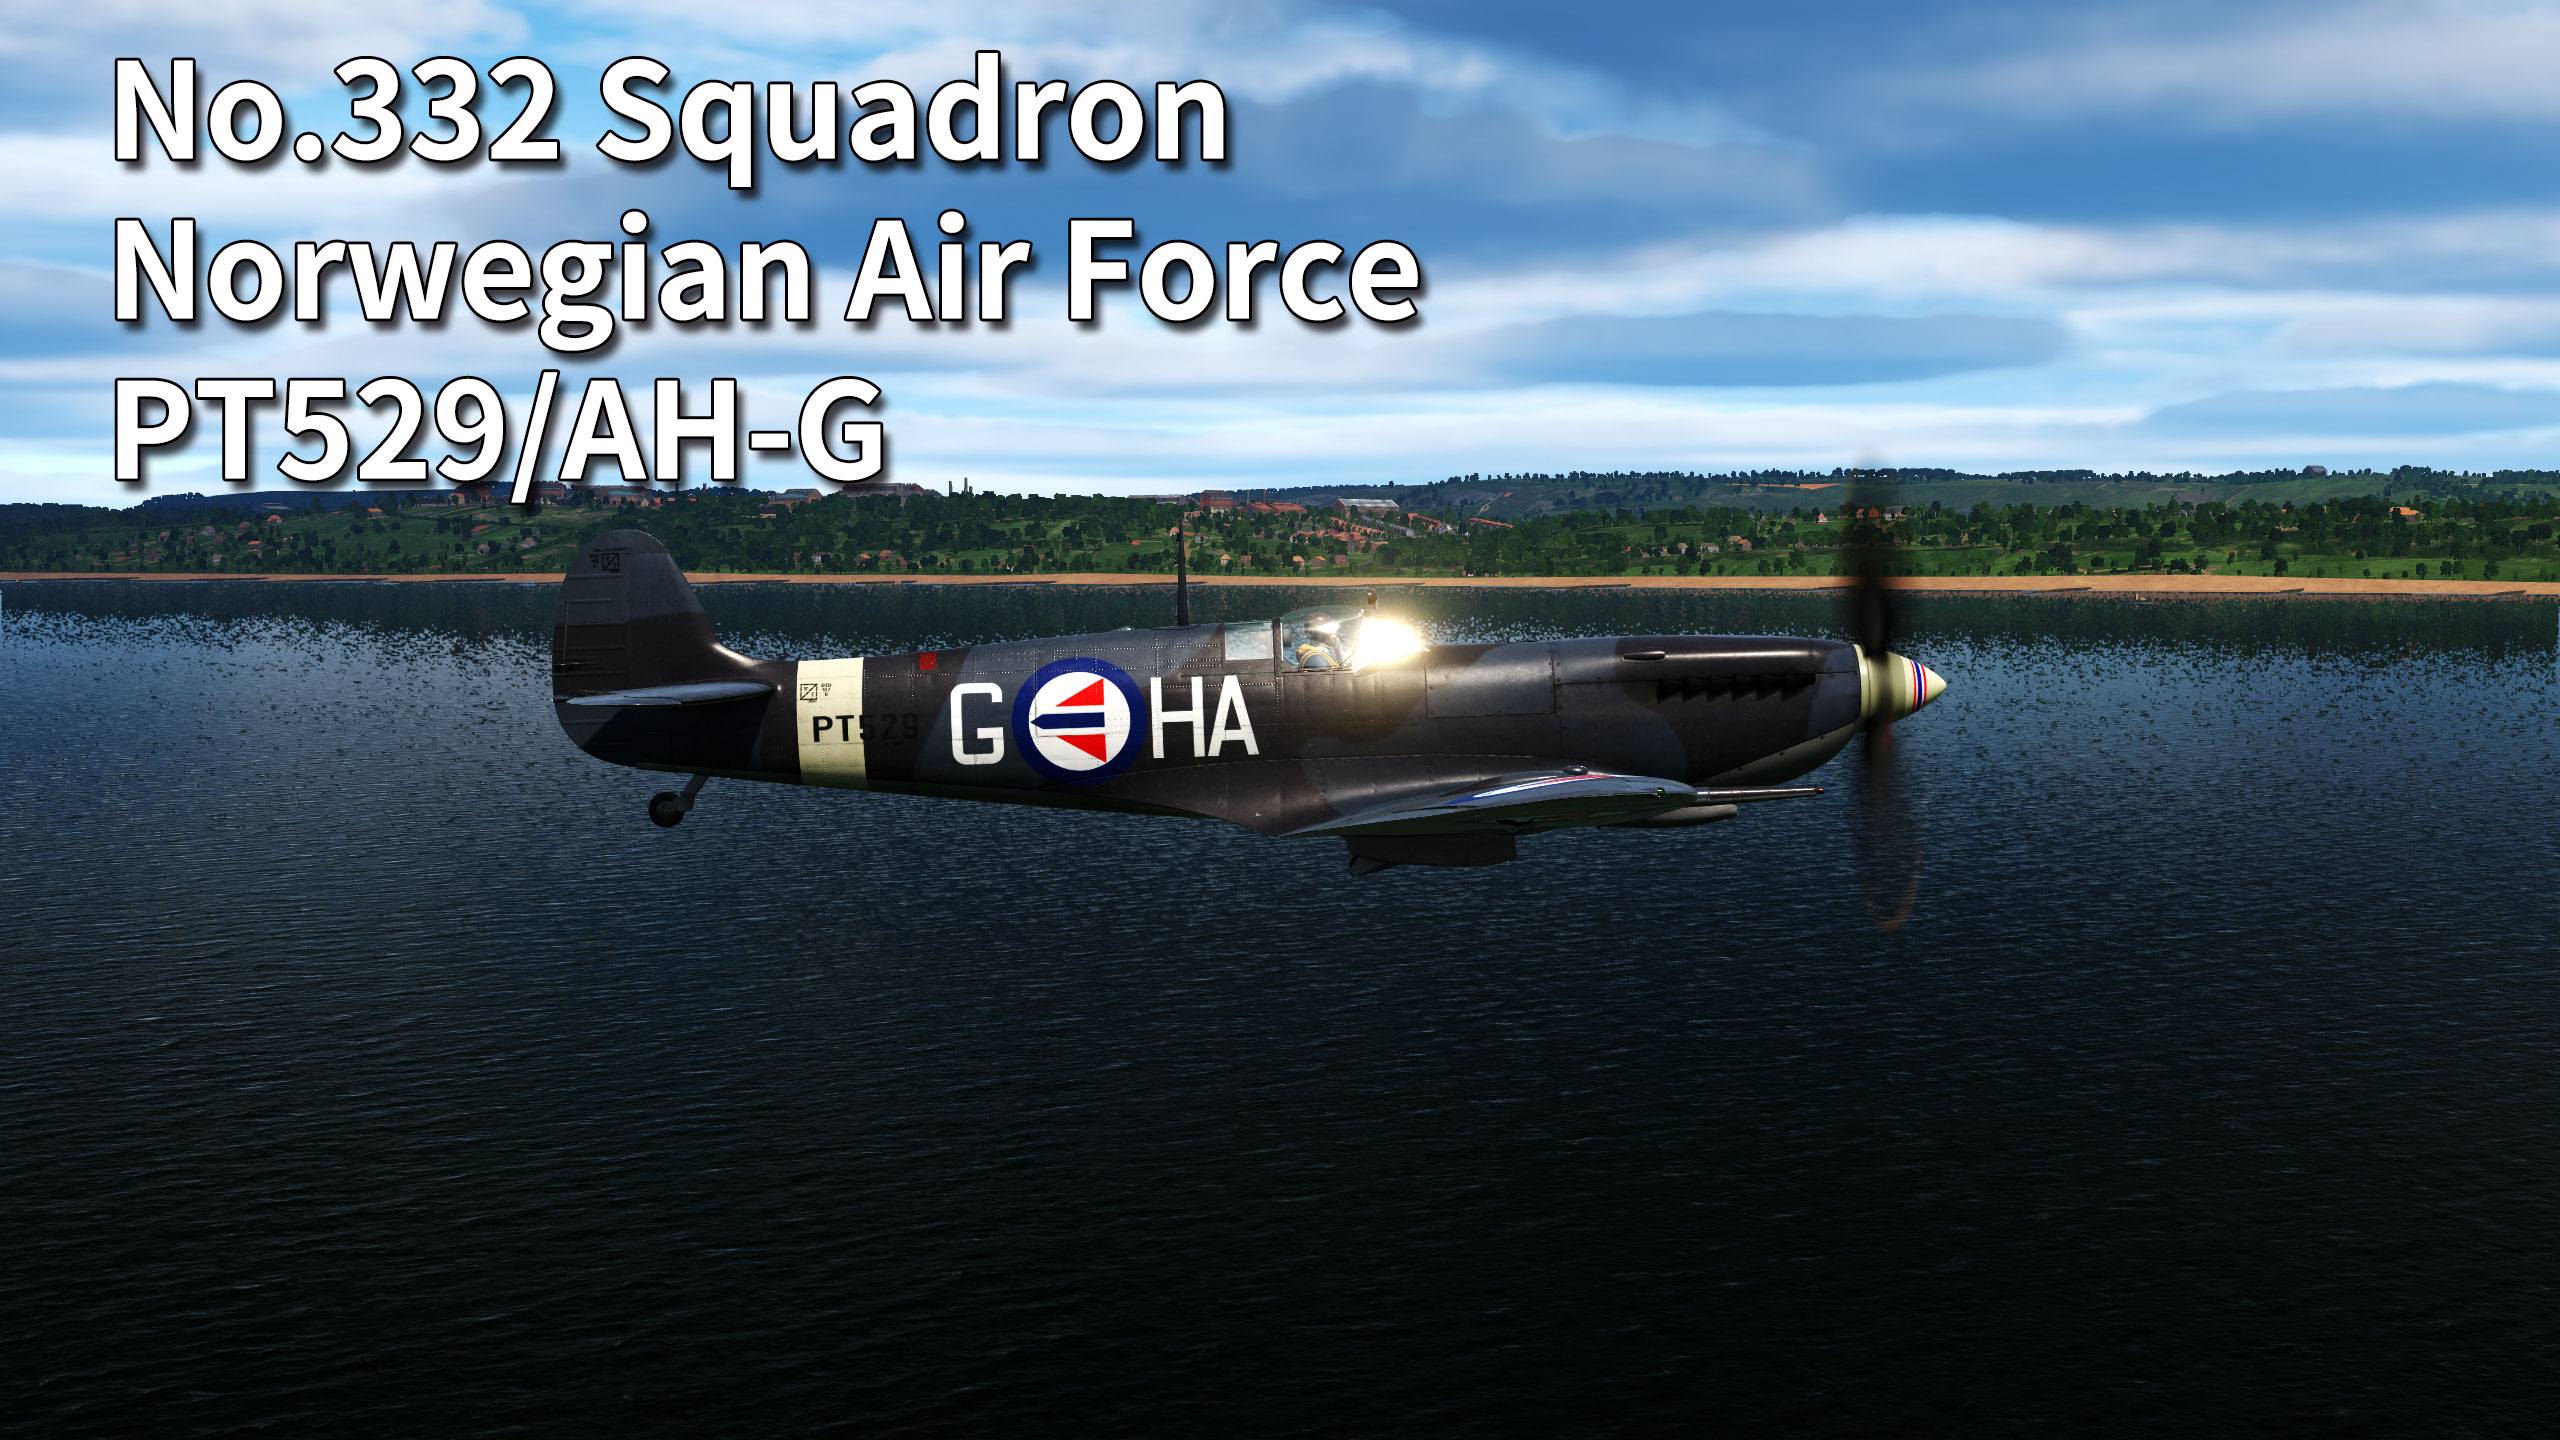 Norwegian Air Force No.332 Squadron Spitfire L.F. Mk.IX PT529/AH-G